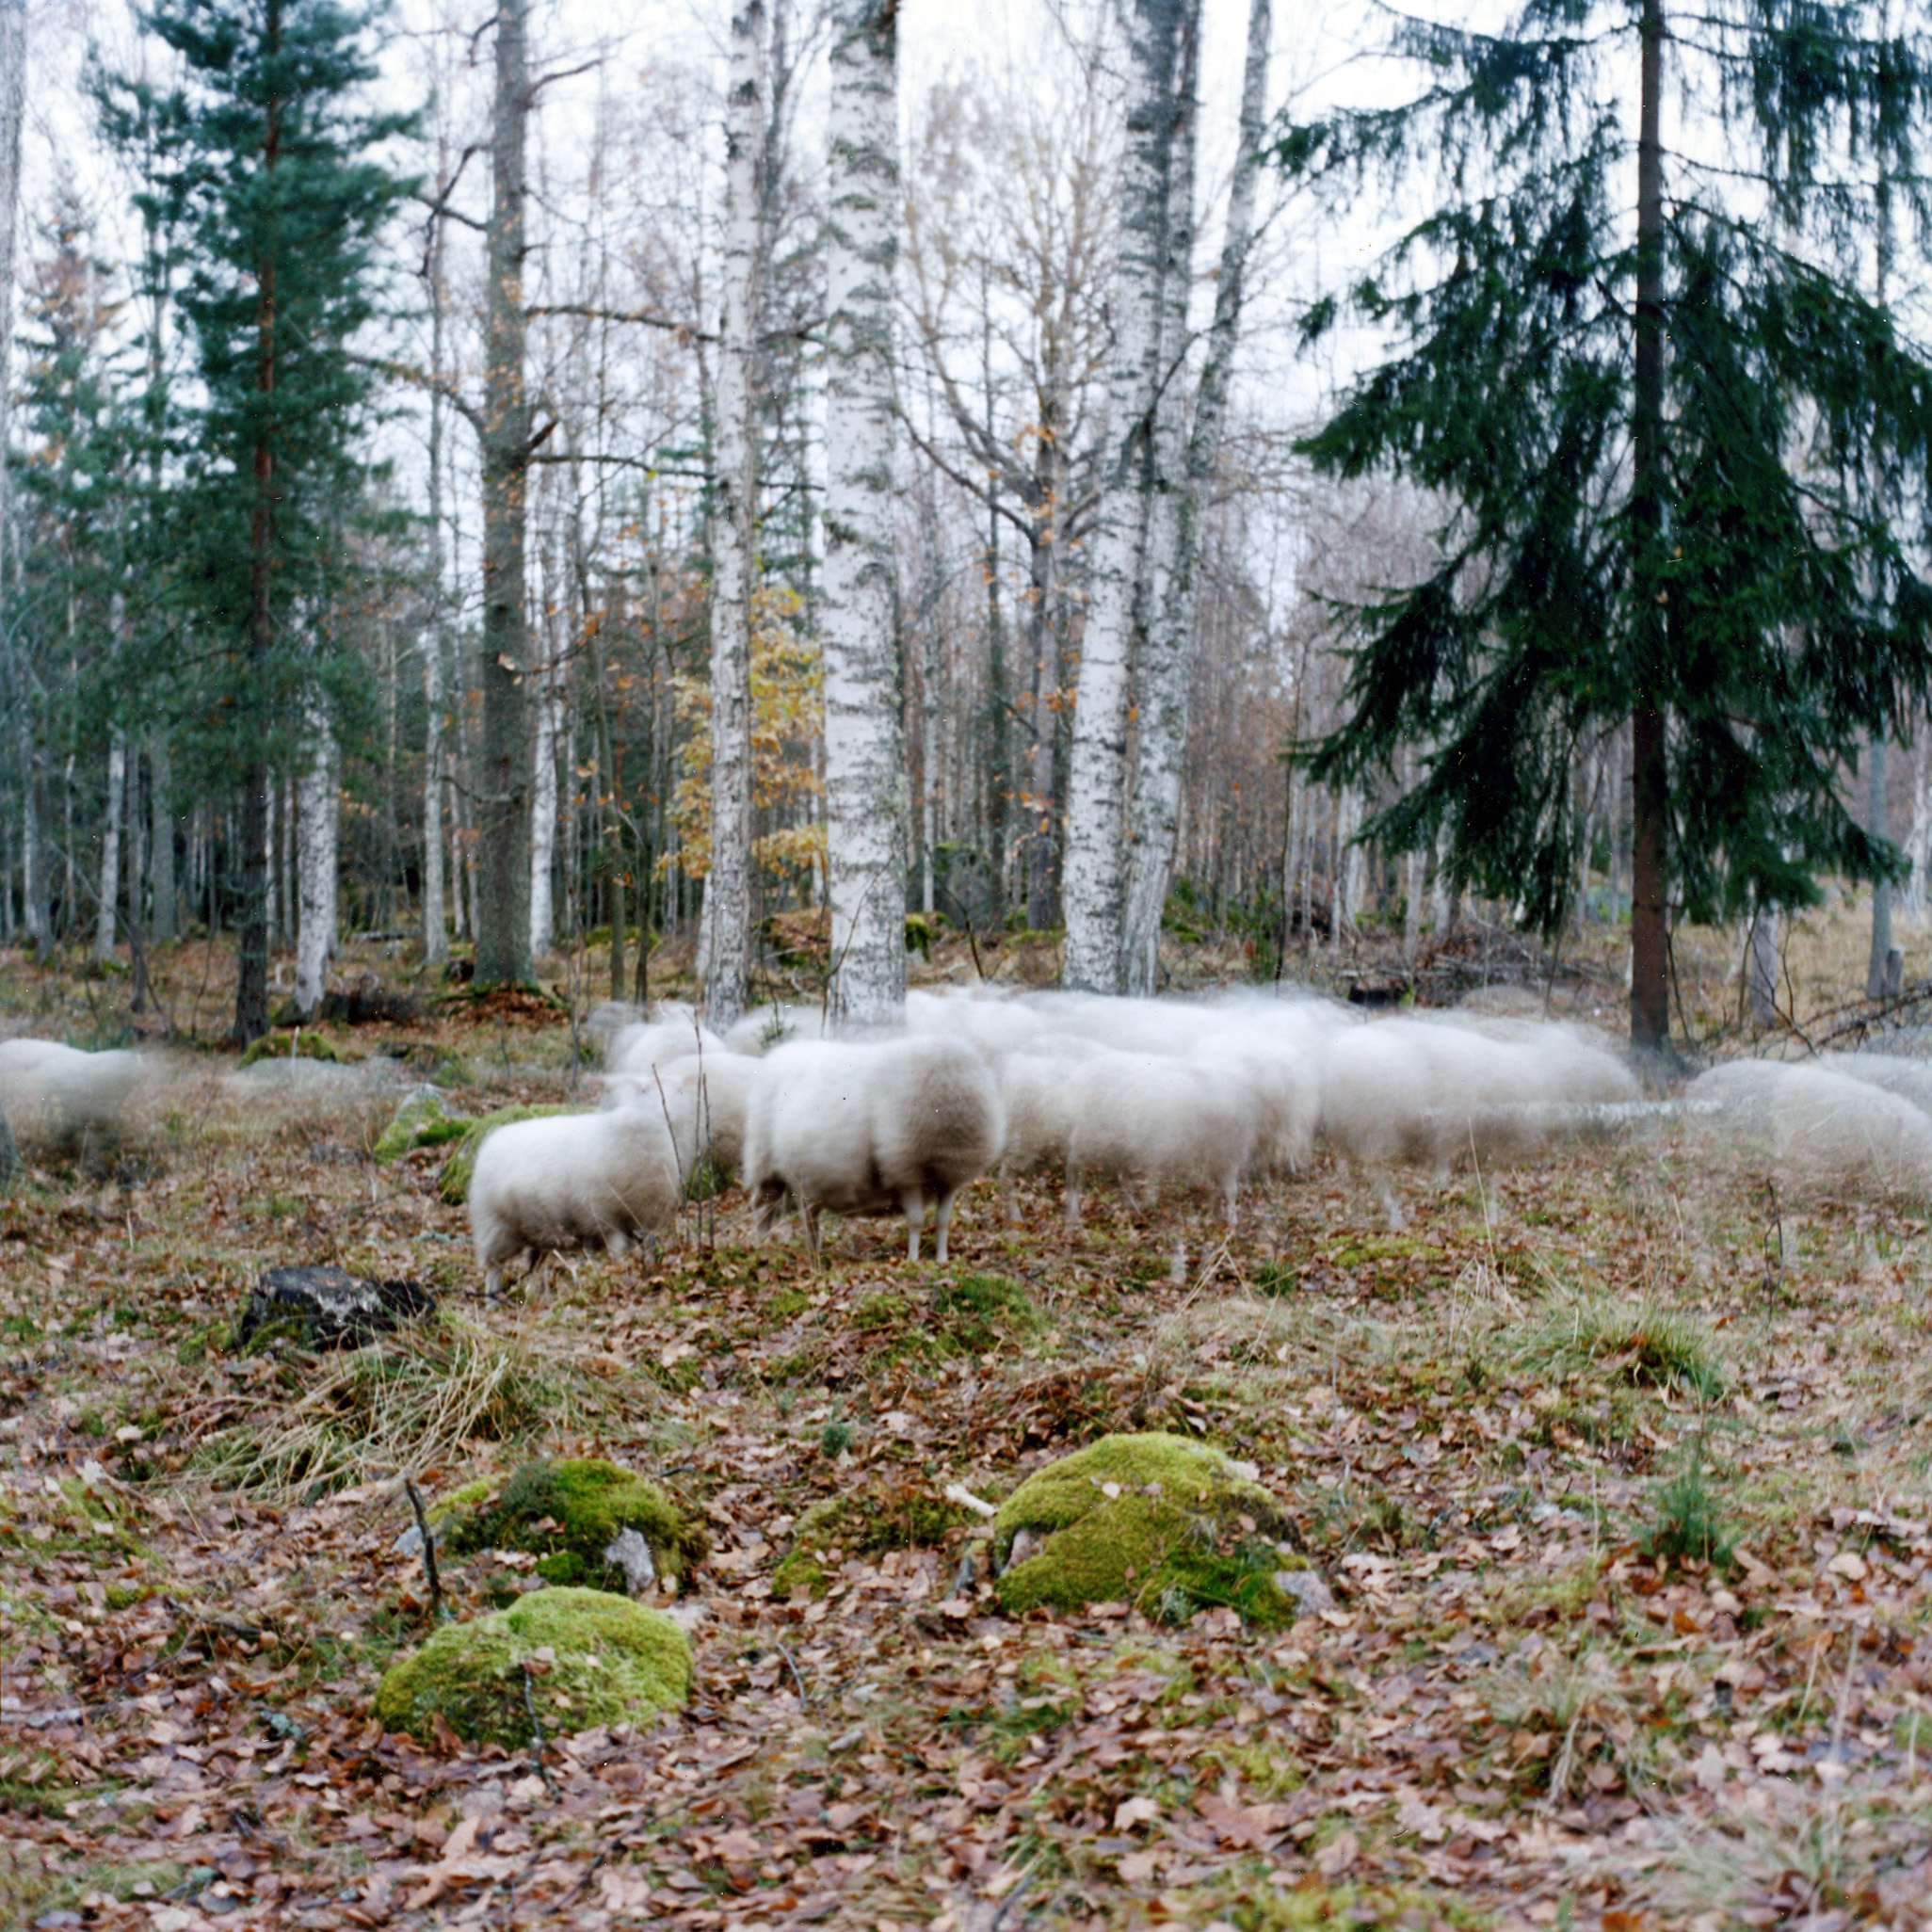  Troupeau de moutons dans un bois en Suède 